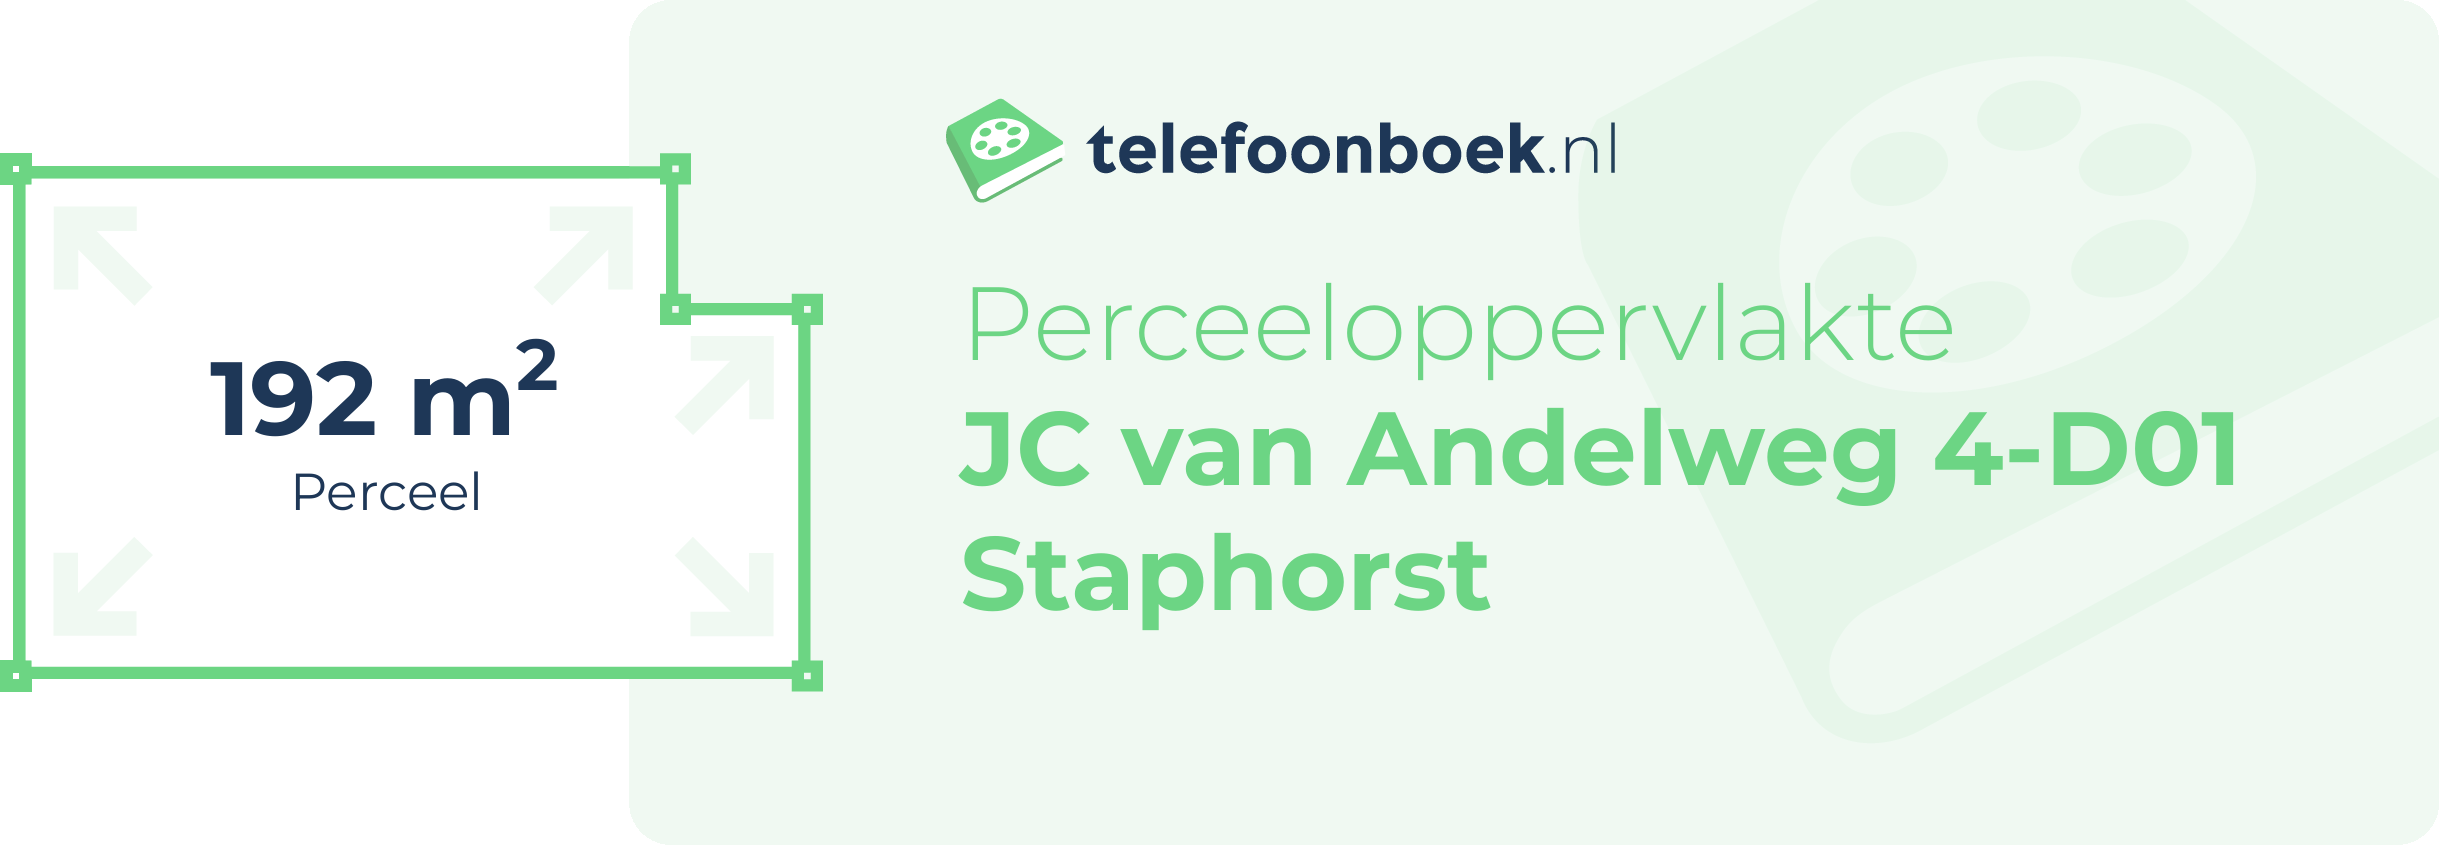 Perceeloppervlakte JC Van Andelweg 4-D01 Staphorst